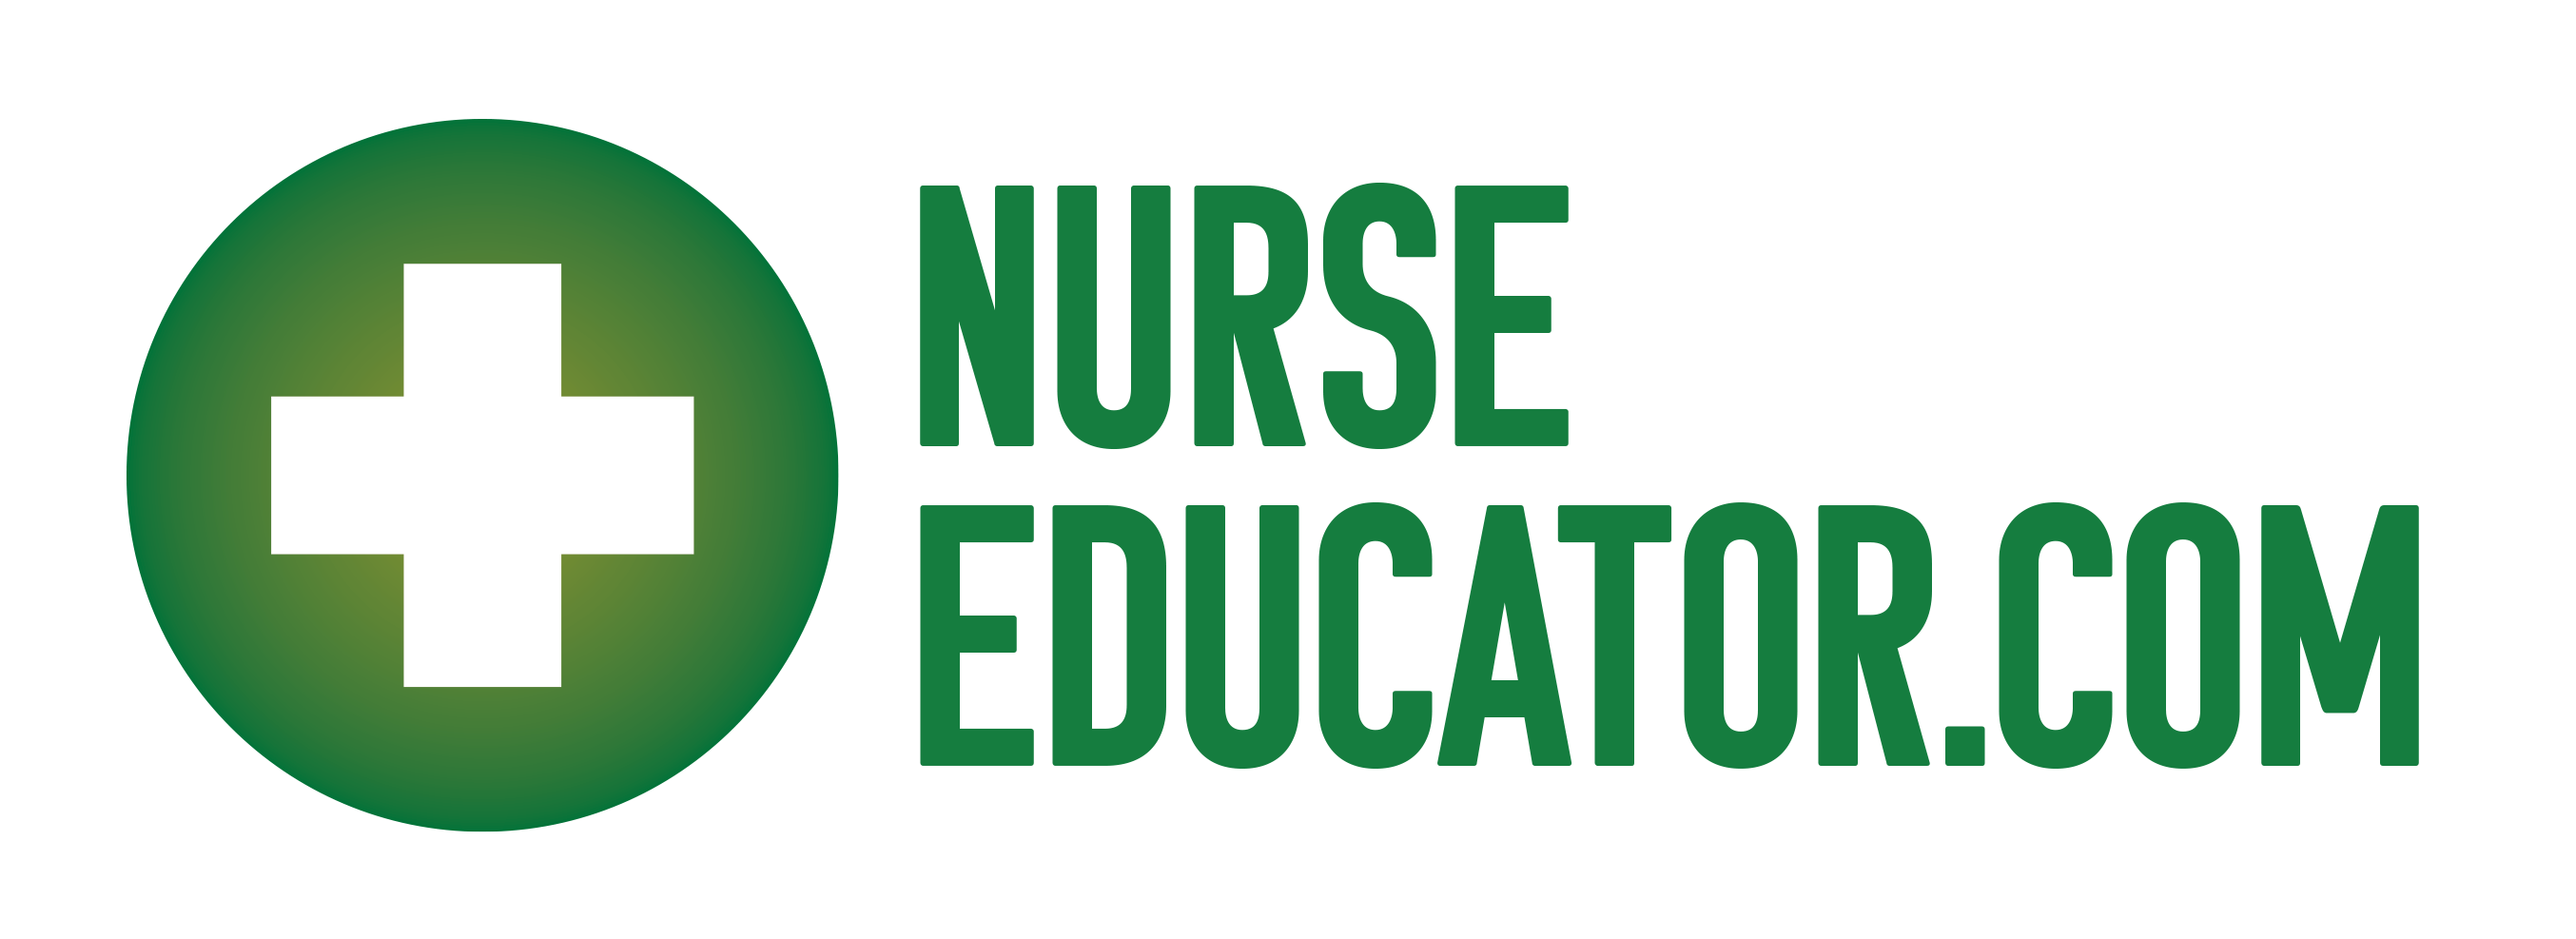 research nurse educator jobs